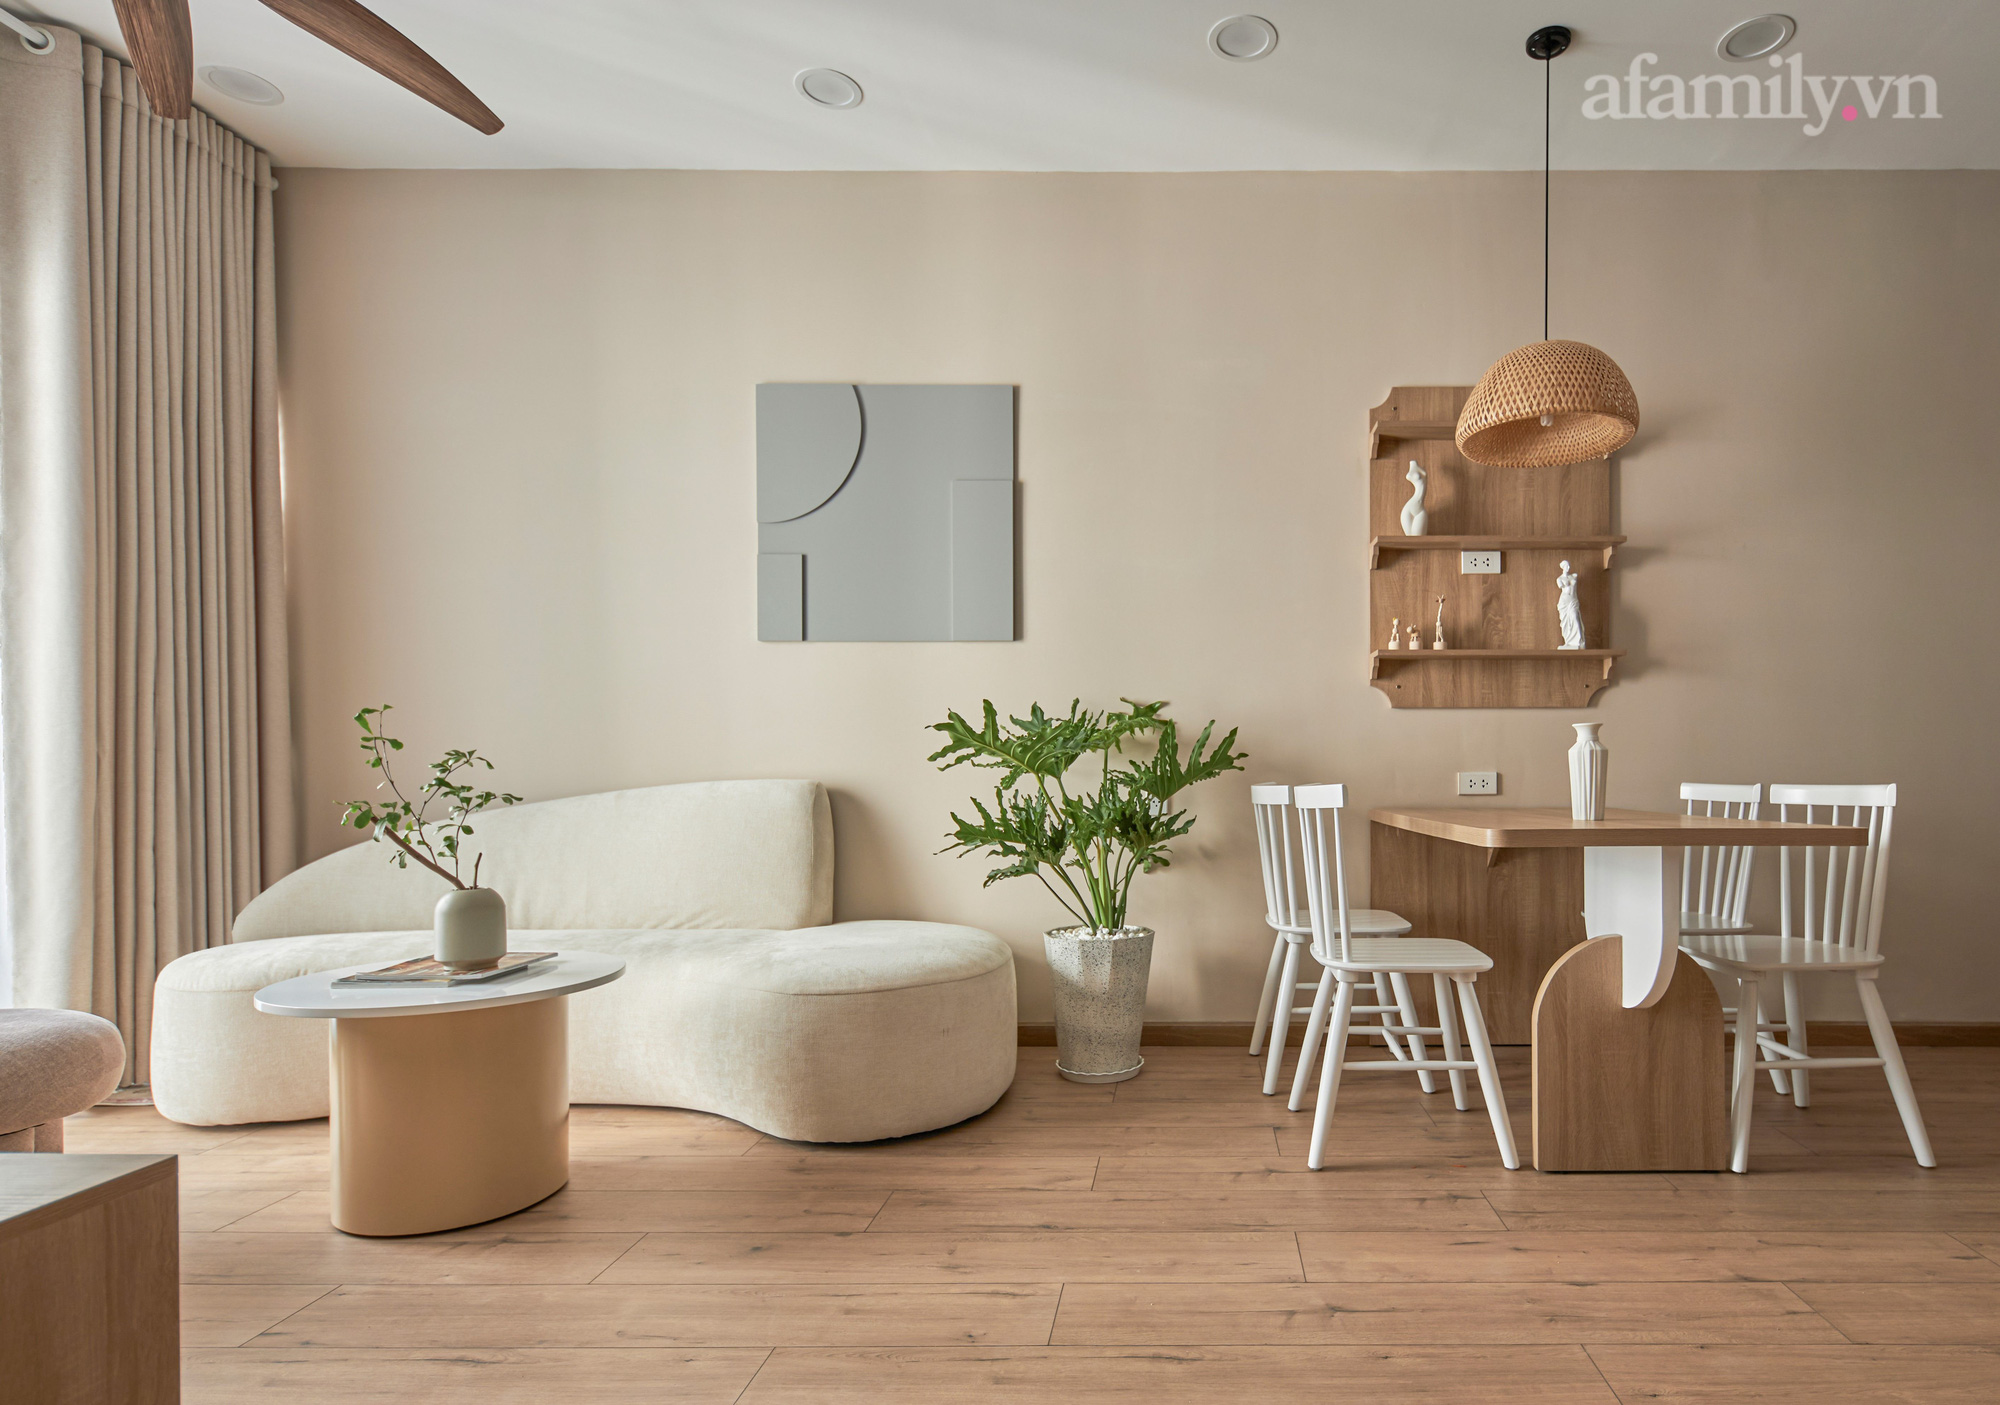 Thiết kế căn hộ nhà ở xã hội 63m² tại Nha Trang, diện tích nhỏ nhưng tối giản, gam trung tính đầy cảm hứng - Ảnh 2.